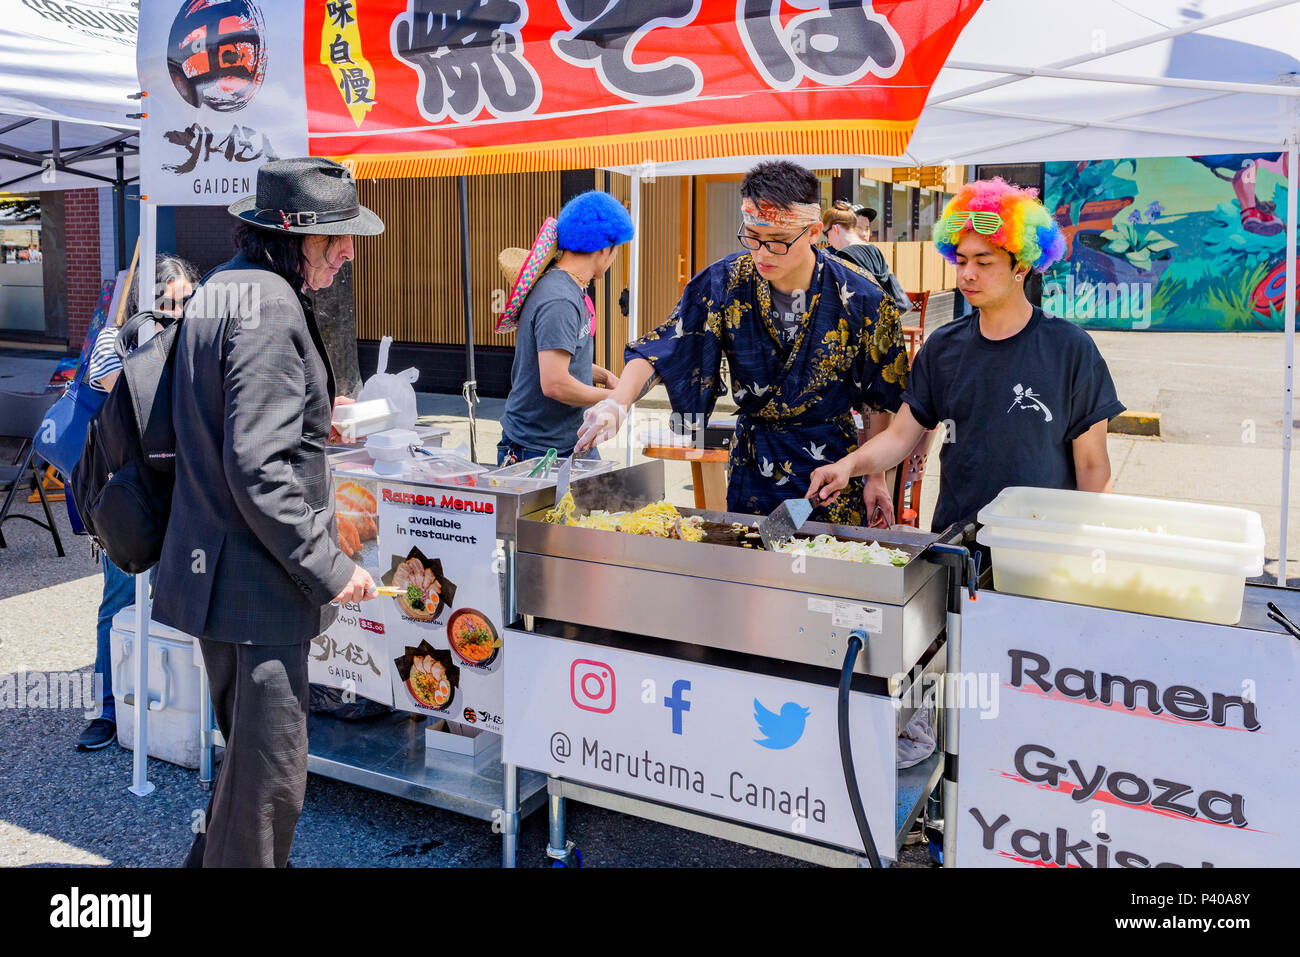 Ramen Gyoza stand alimentari, ar giorno gratuito, Main Street, Vancouver, British Columbia, Canada. Foto Stock